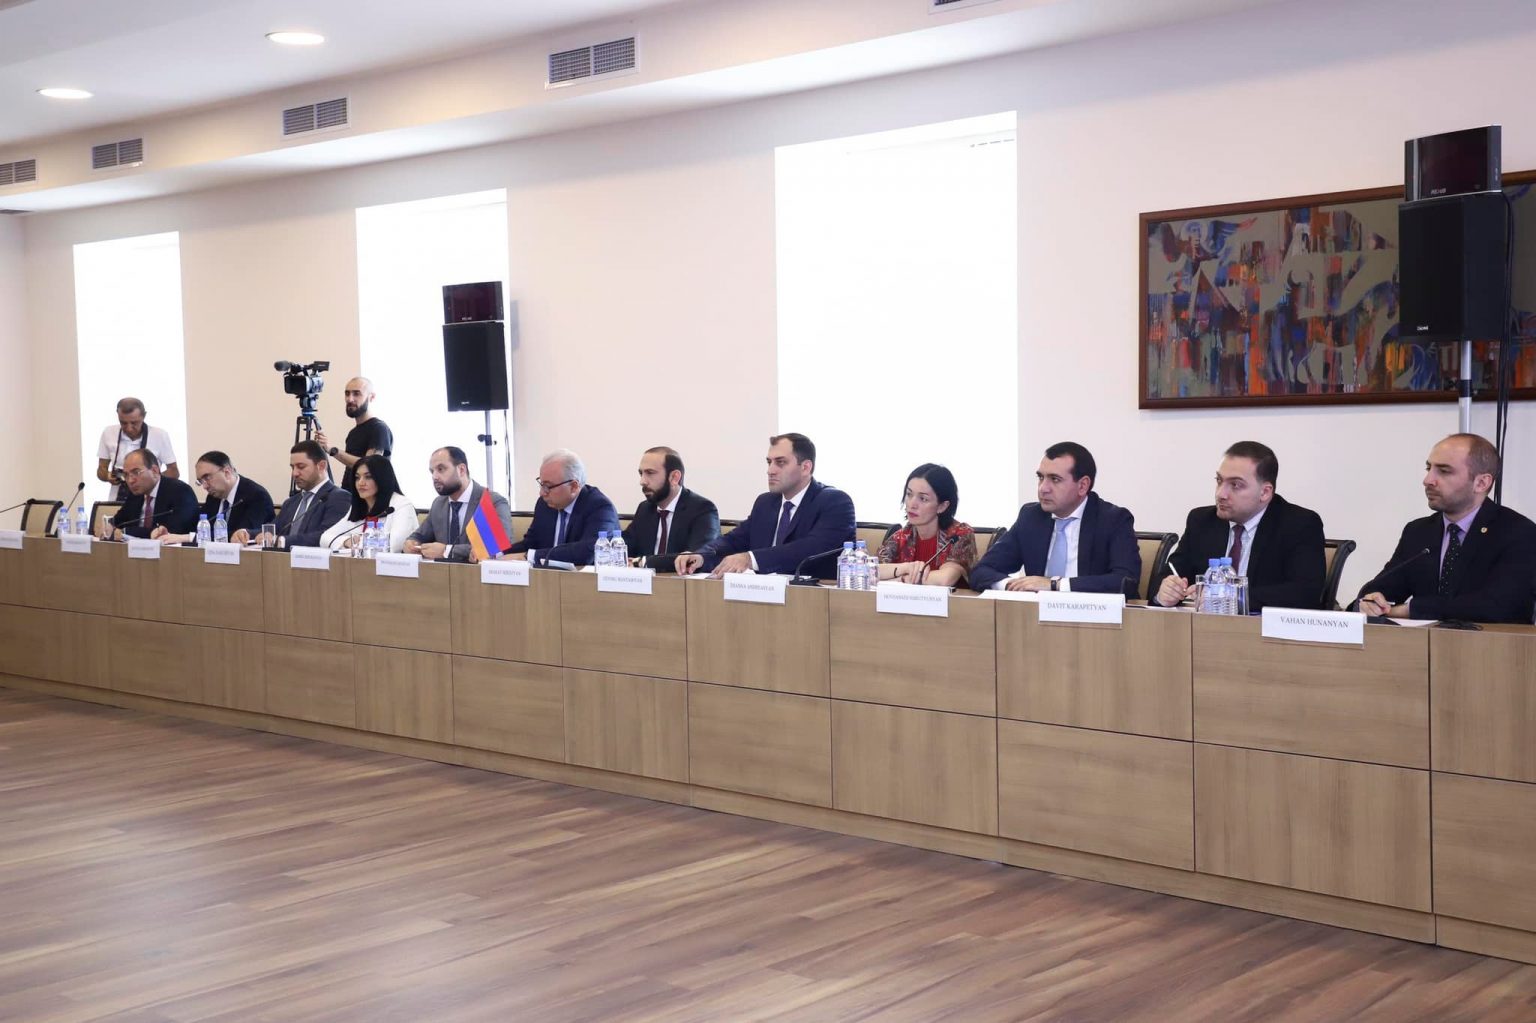 ՀՀ-ում ընթանում է առևտրի, տեխնոլոգիաների, գիտակրթական և մշակույթի բնագավառներում համագործակցության հայ-հնդկական միջկառավարական հանձնաժողովի 8-րդ նիստը